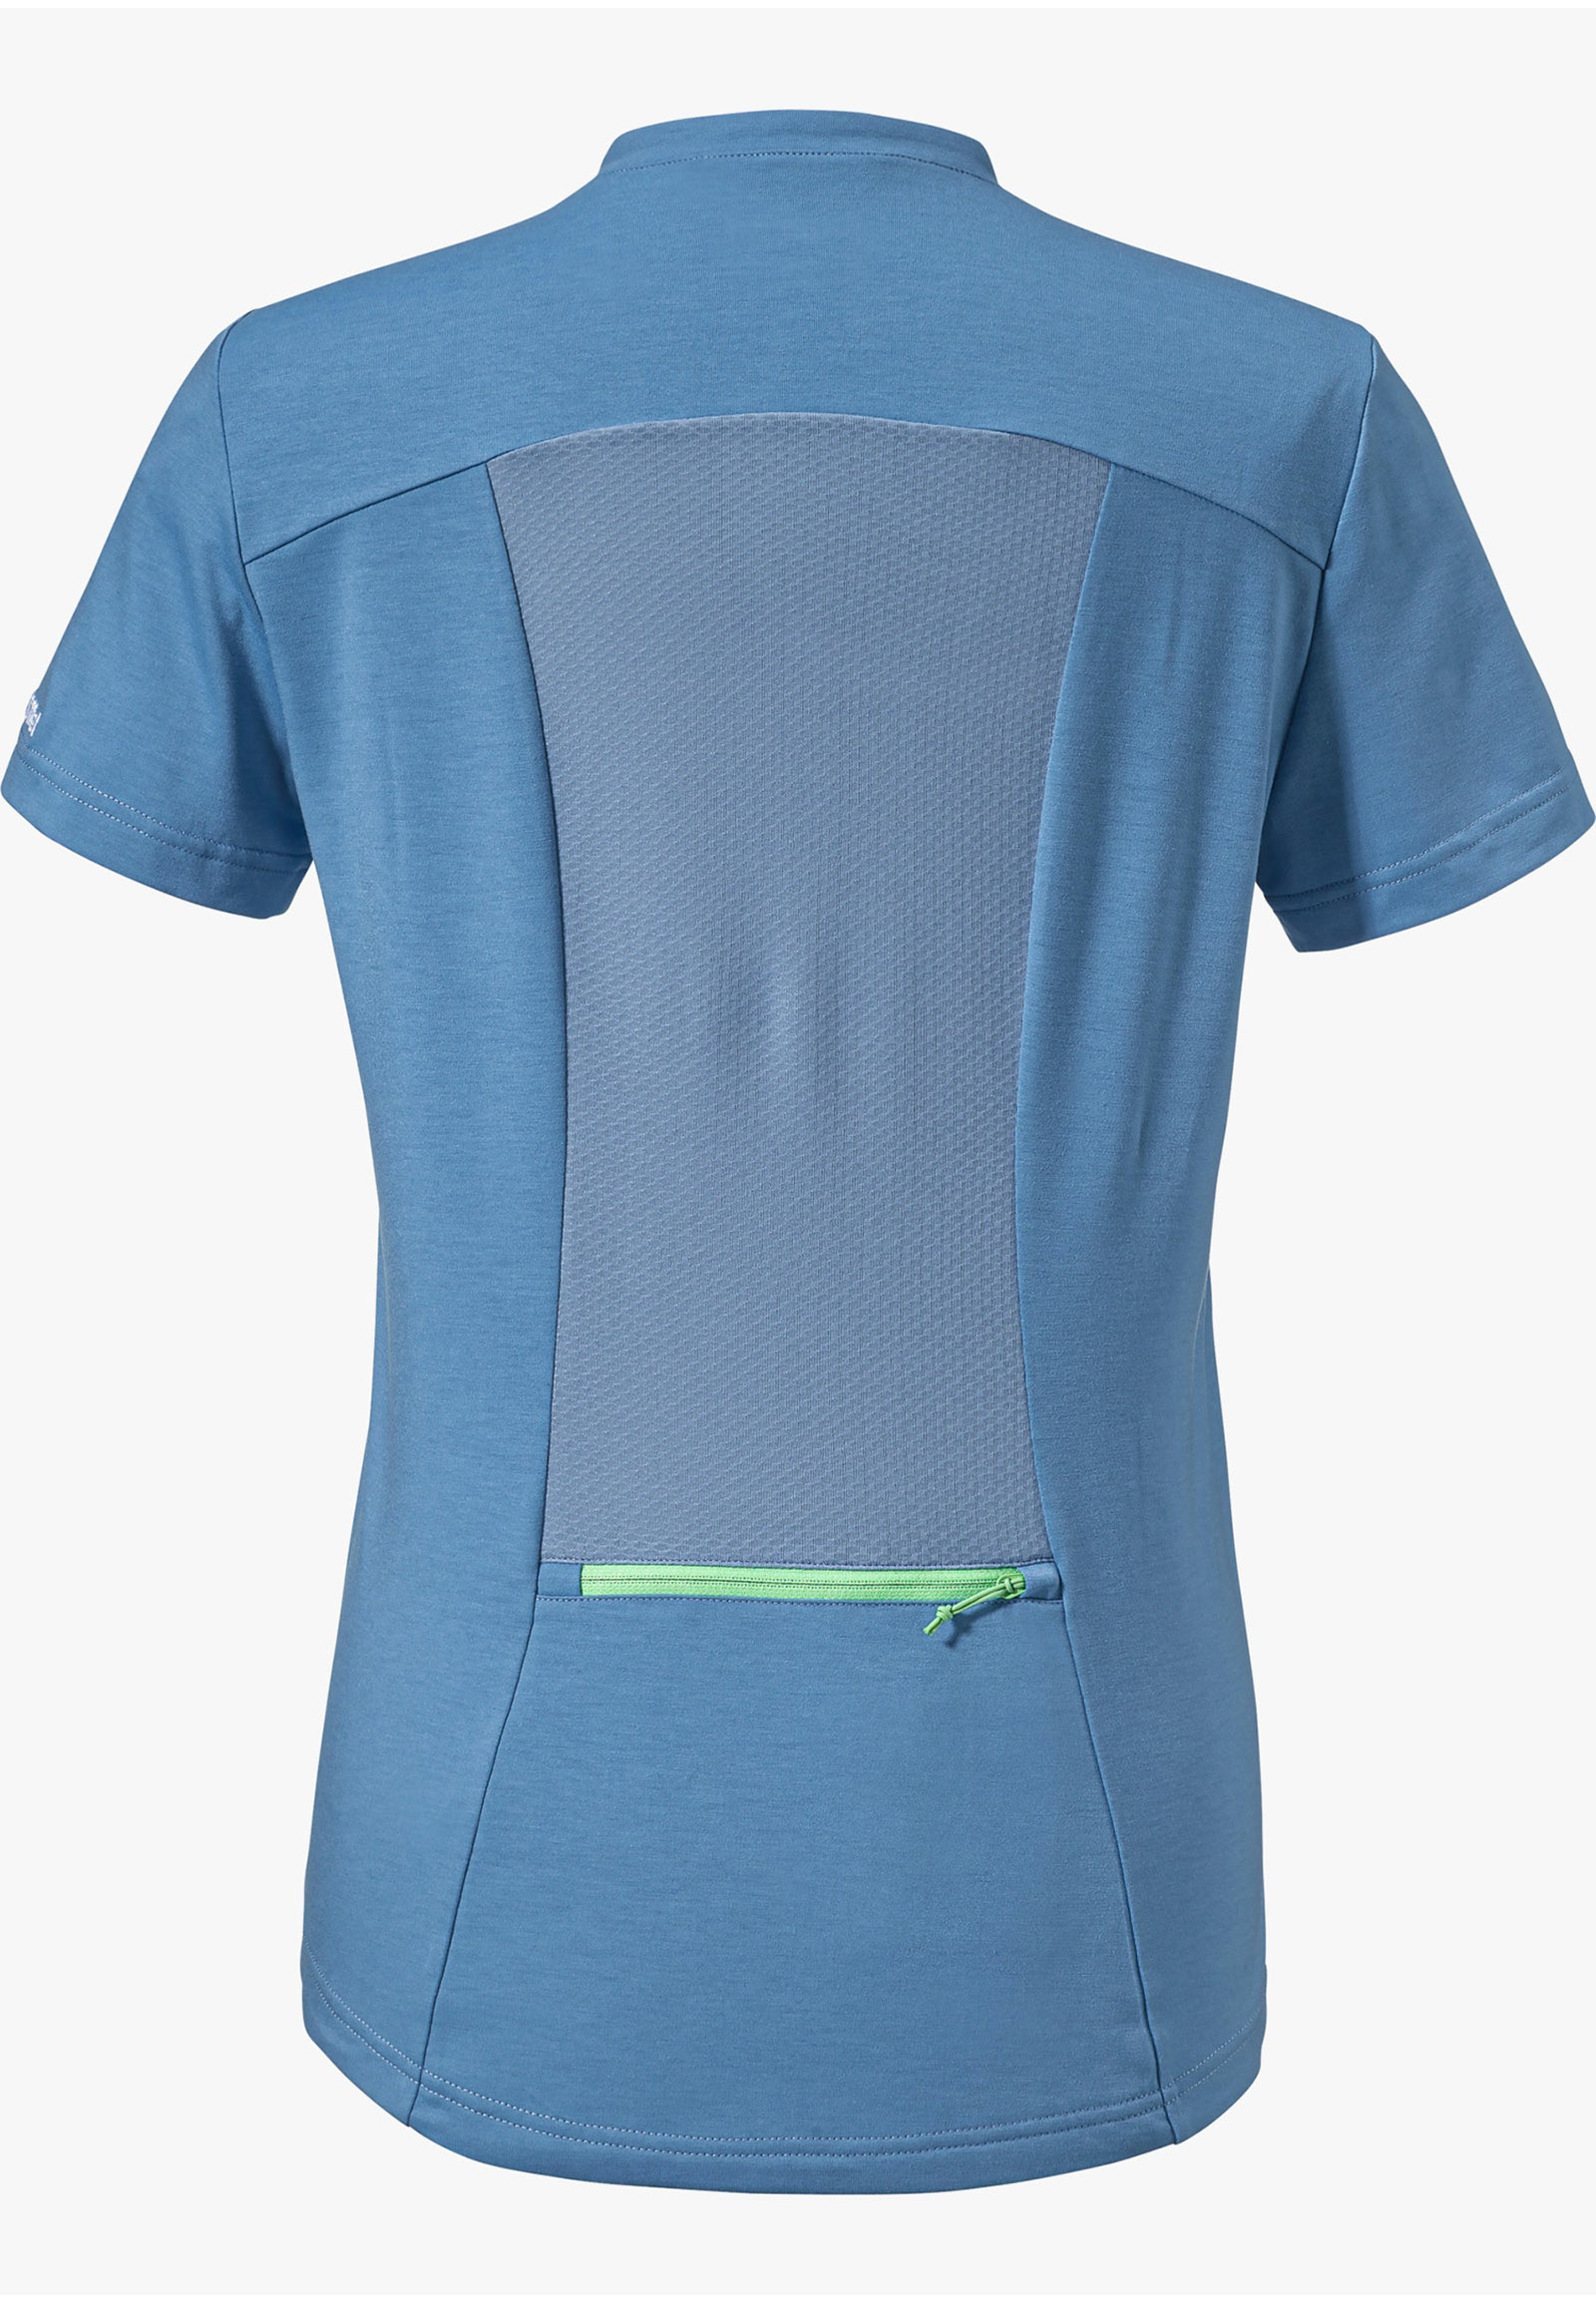 Schöffel Damen Alpe Adria L Kühlendes & leichtes Shirt für Radreisen 12995 hellblau